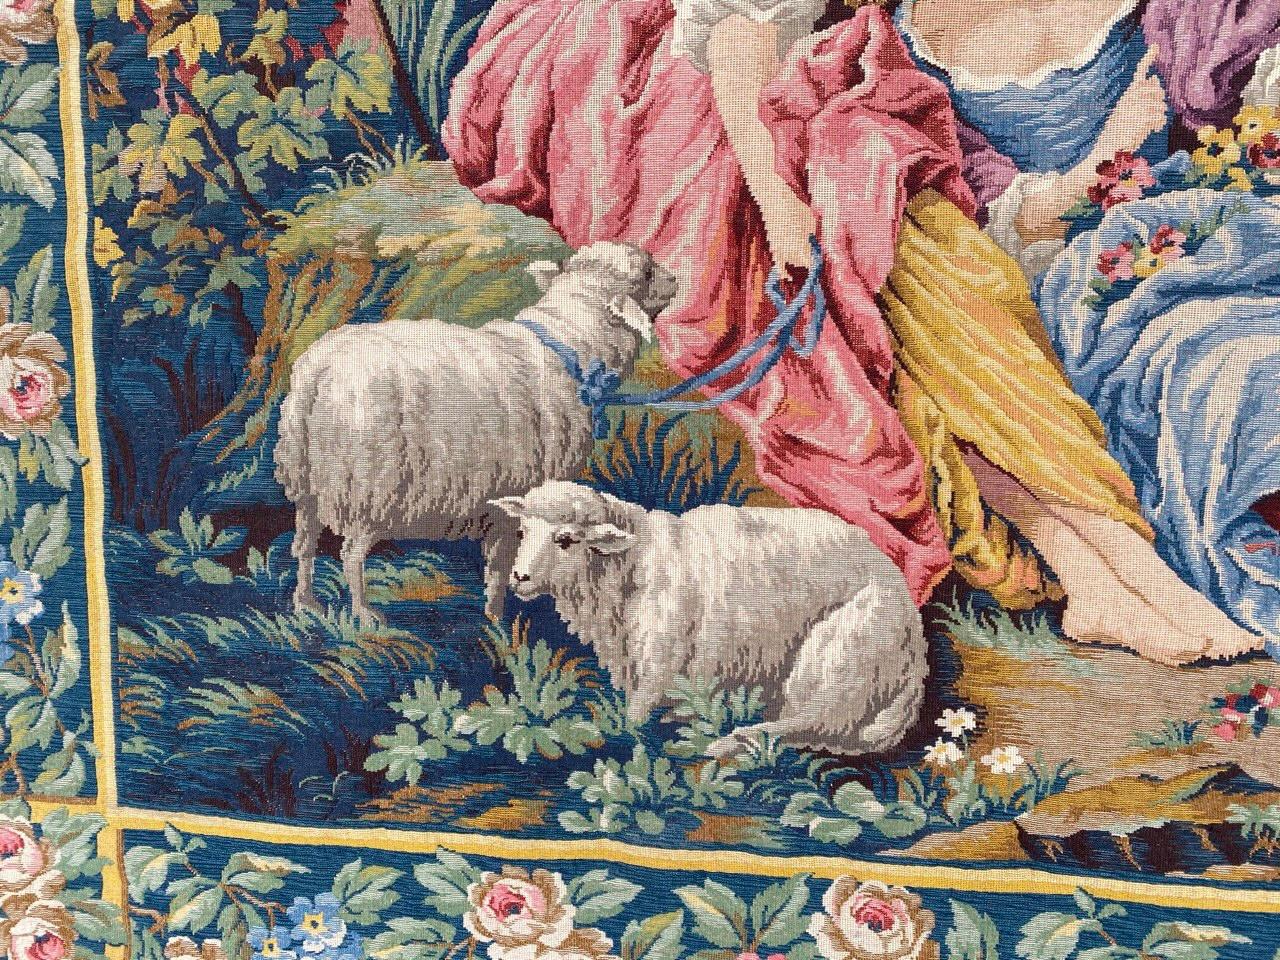 Très belle tapisserie française du milieu du siècle dernier avec un très beau dessin de scène galante (dessin de Boucher) et de belles couleurs, entièrement tissée par la manufacture mécanique Jaquar avec de la laine sur une base de laine.